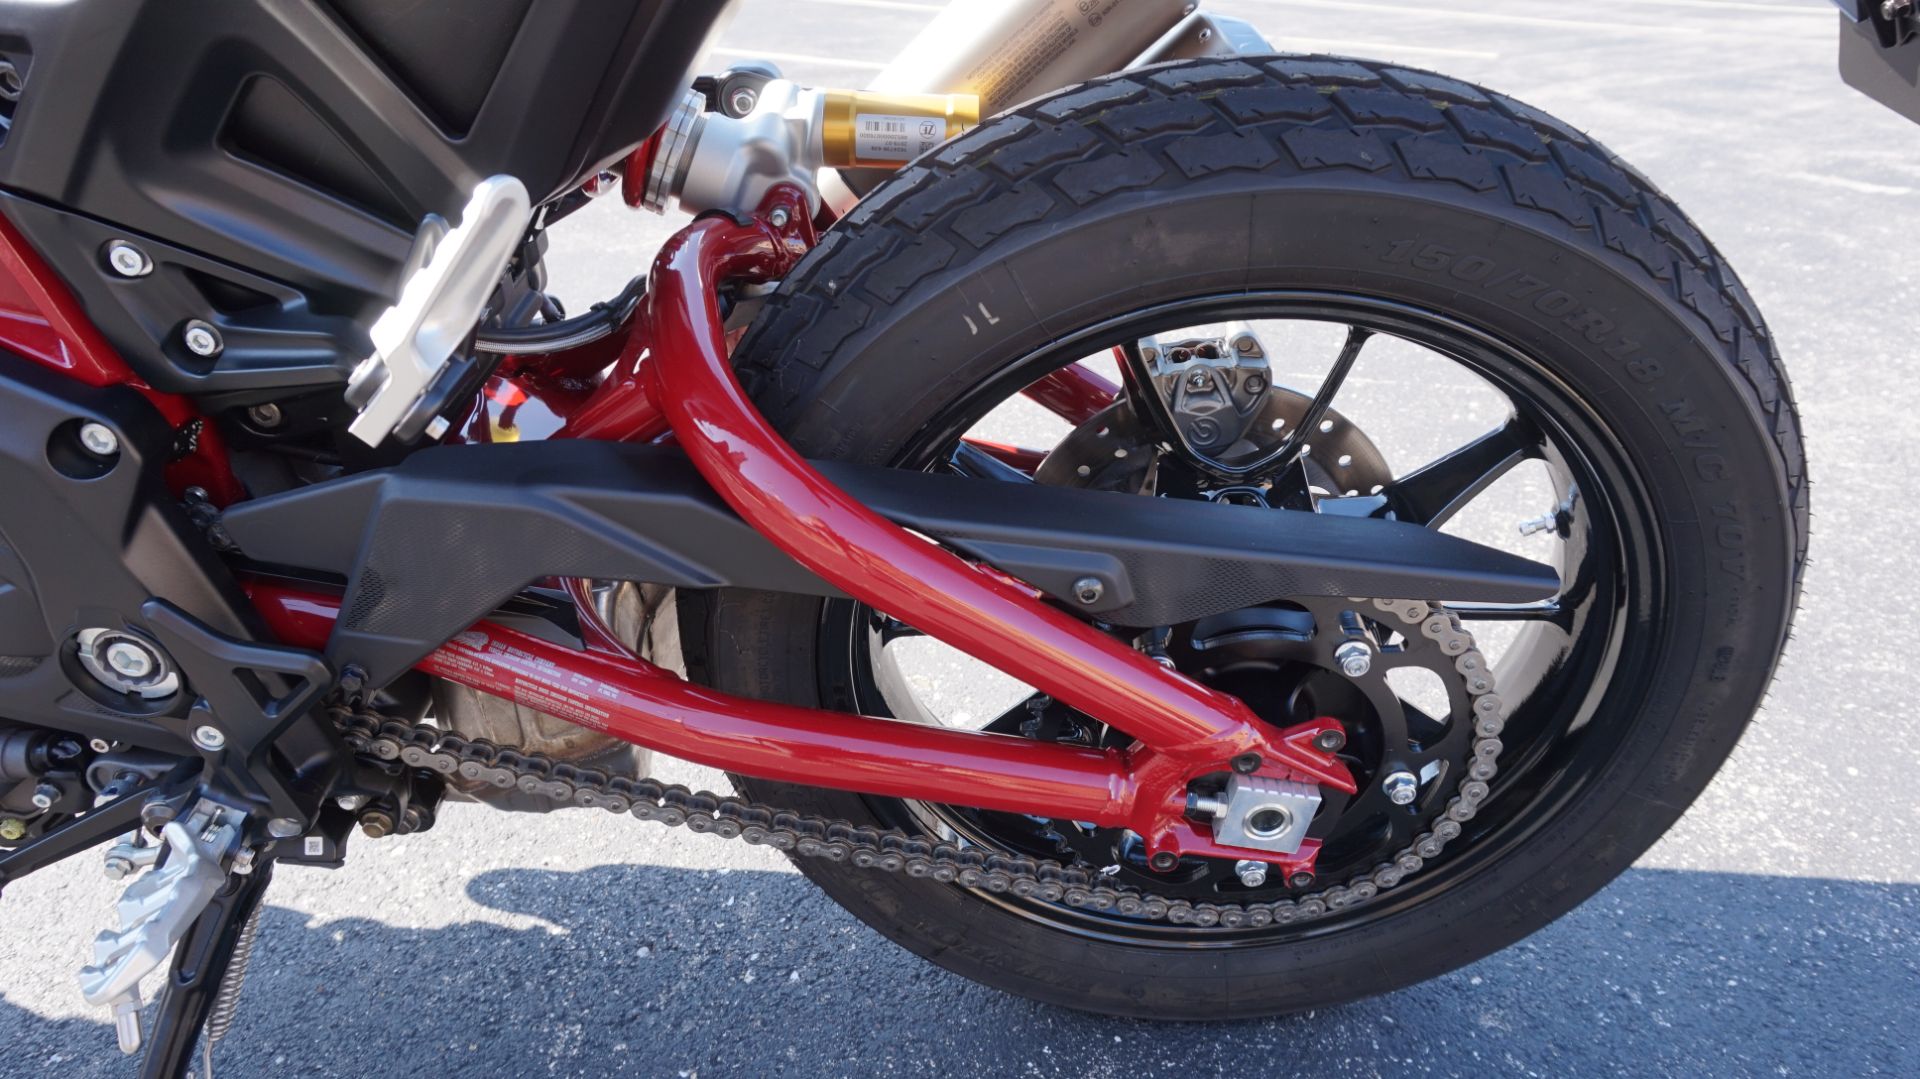 2019 Indian Motorcycle FTR™ 1200 S in Racine, Wisconsin - Photo 33